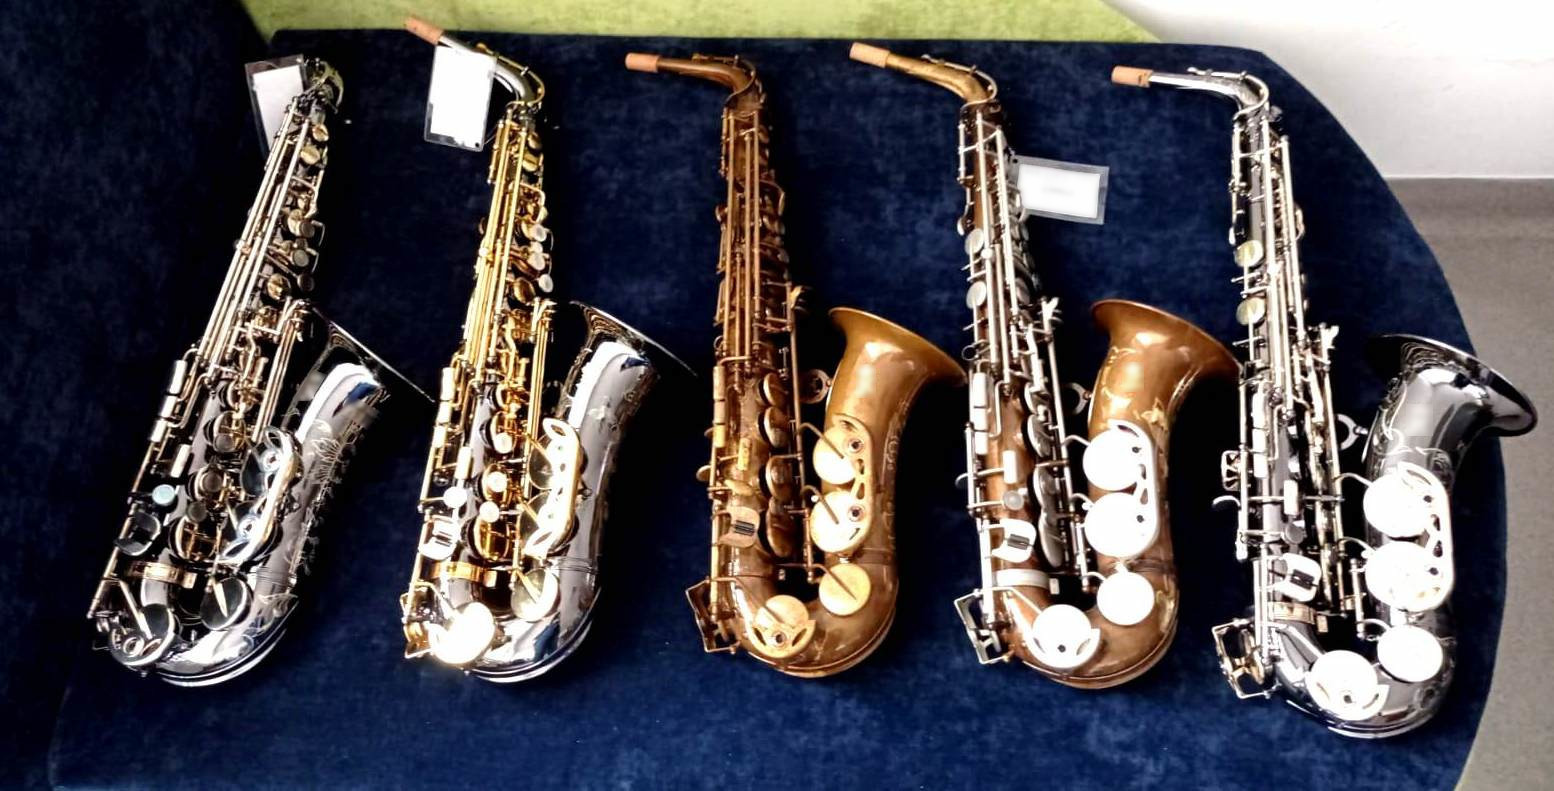 Sądeccy policjanci odzyskali skradzione saksofony